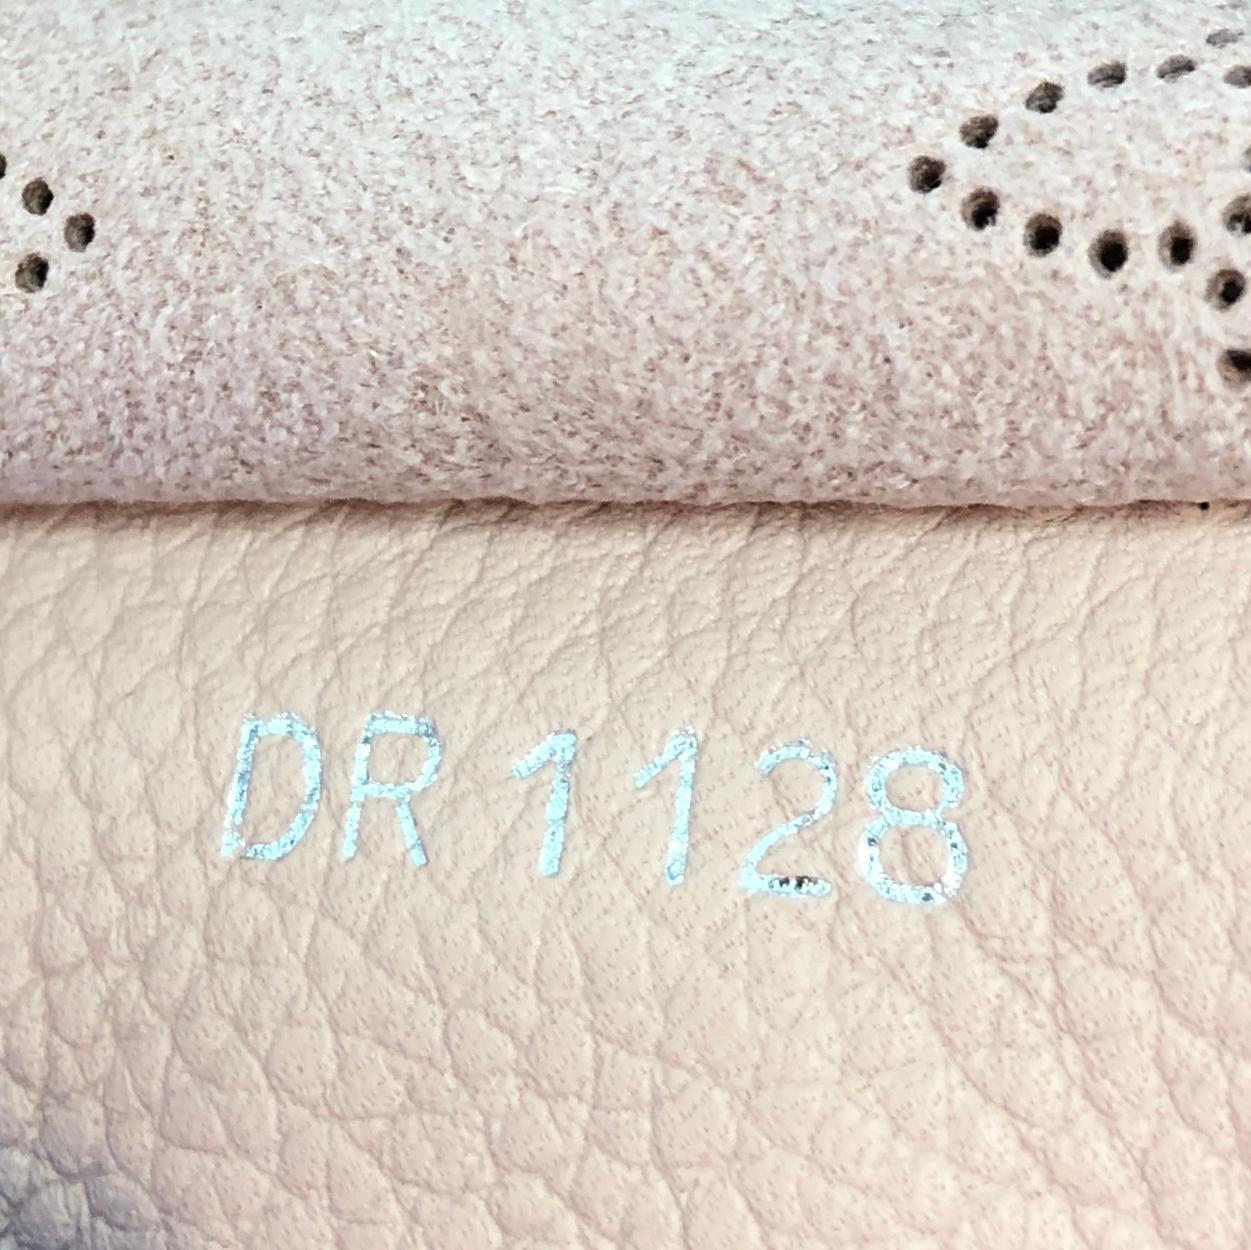 Beige Louis Vuitton Hina Handbag Mahina Leather PM